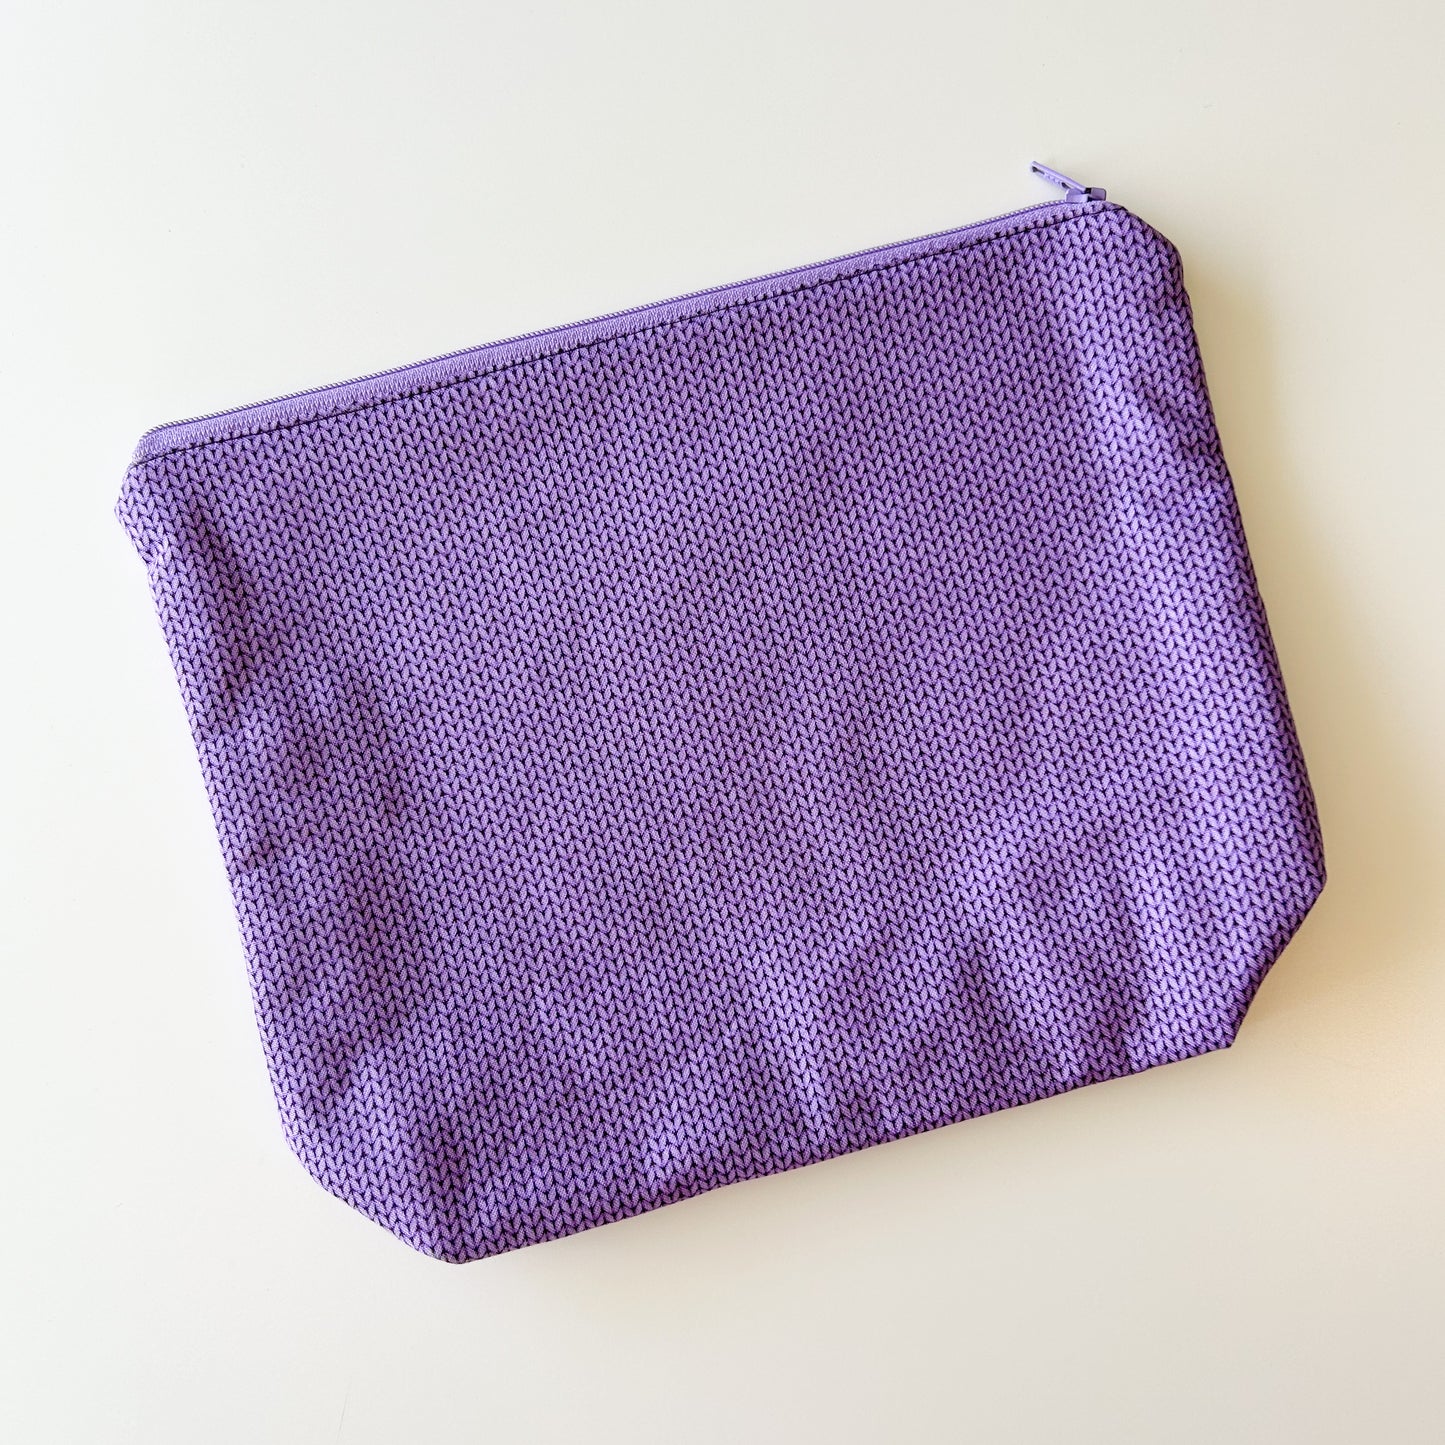 Sock Project Bag - Purple Knit Stitch